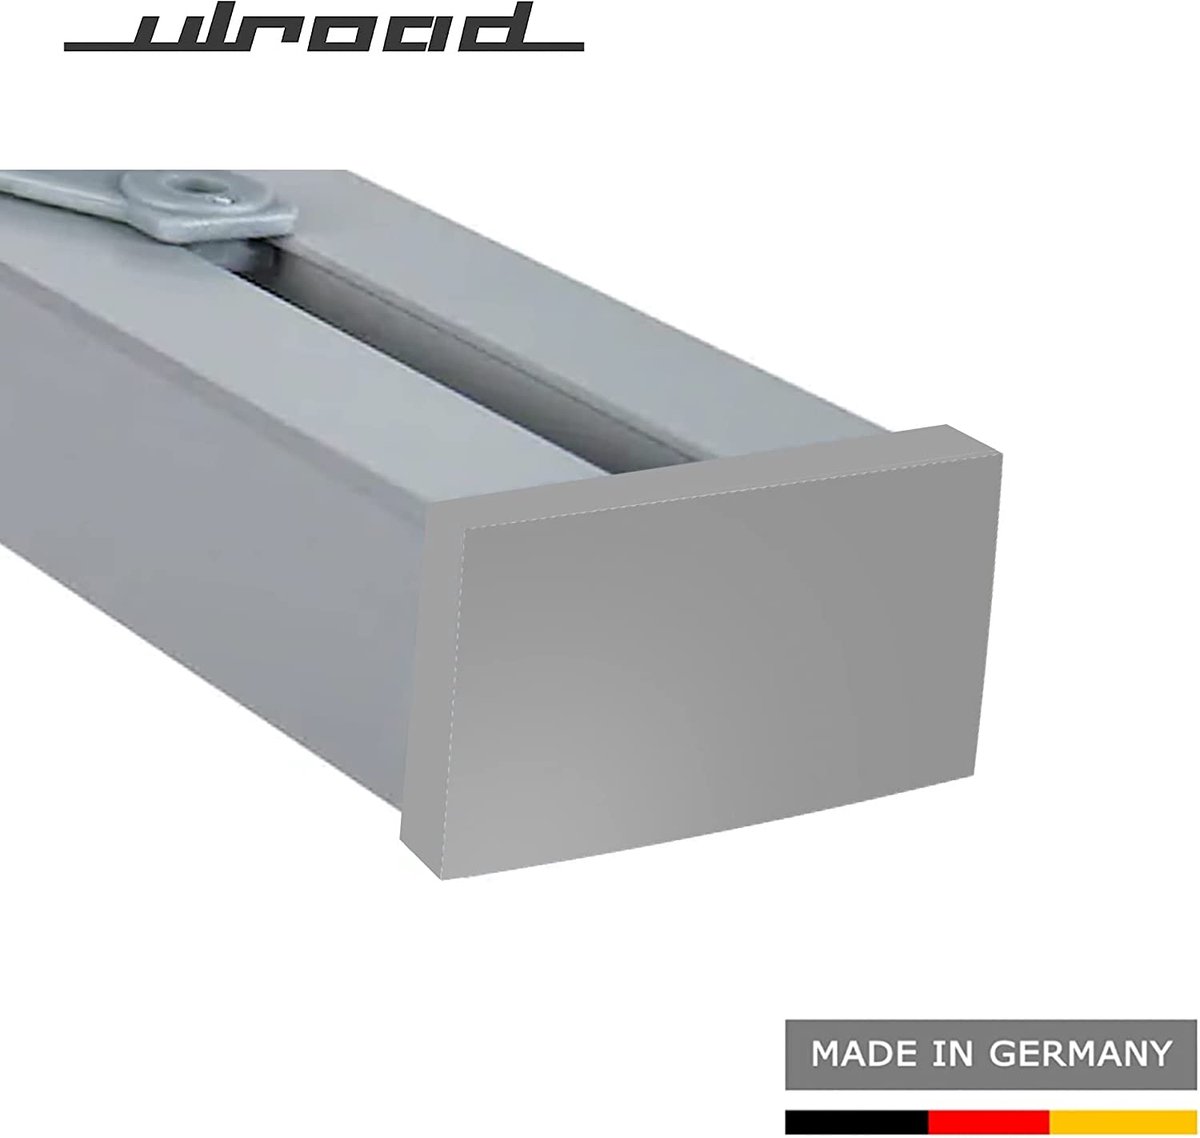 ULROAD 2 stuks eindkappen, geschikt voor Ikea Vidga looplijst, gordijnlijst, 3-loops looprail-lijst gordijnrail